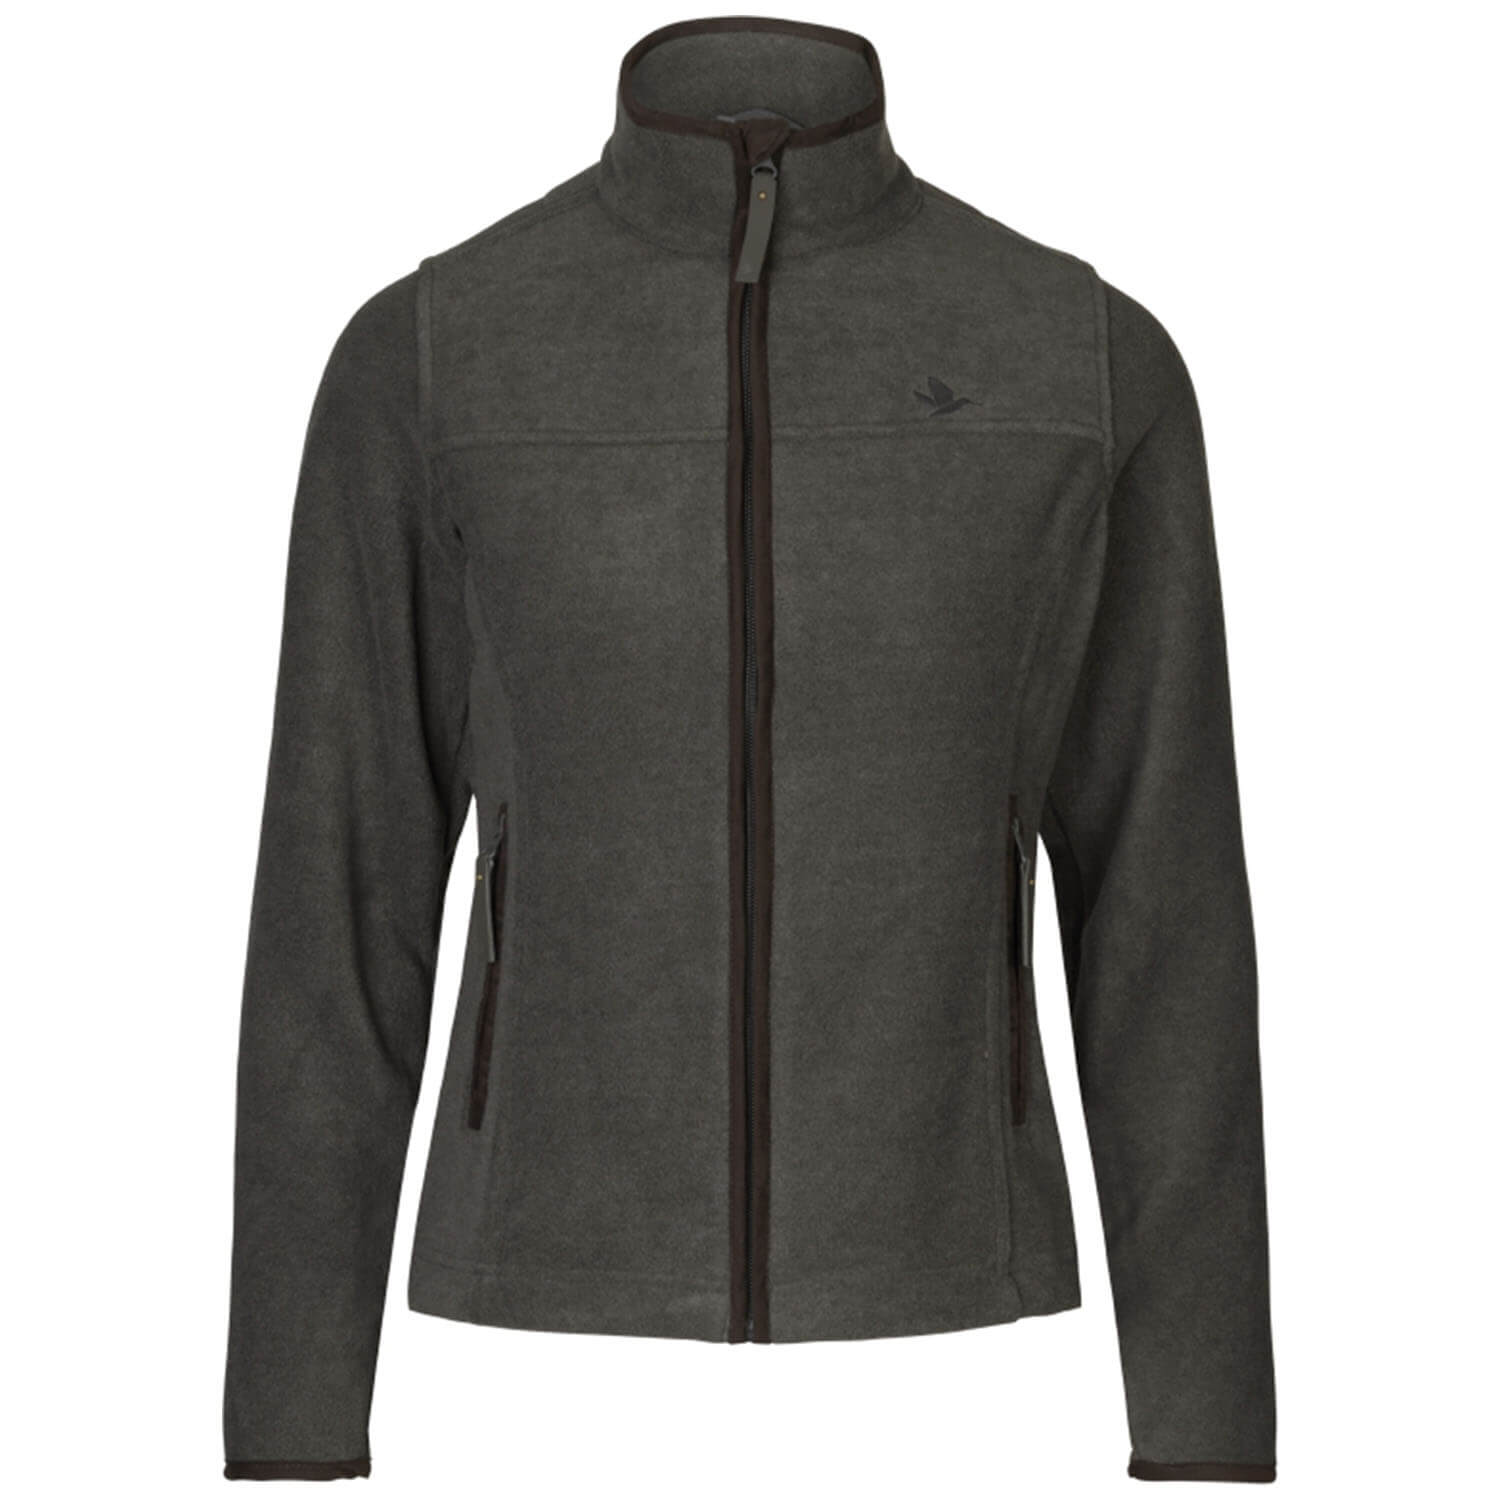  Seeland Women's jacket Woodcock Ivy (Dark Grey Melange) - Hunting Jackets